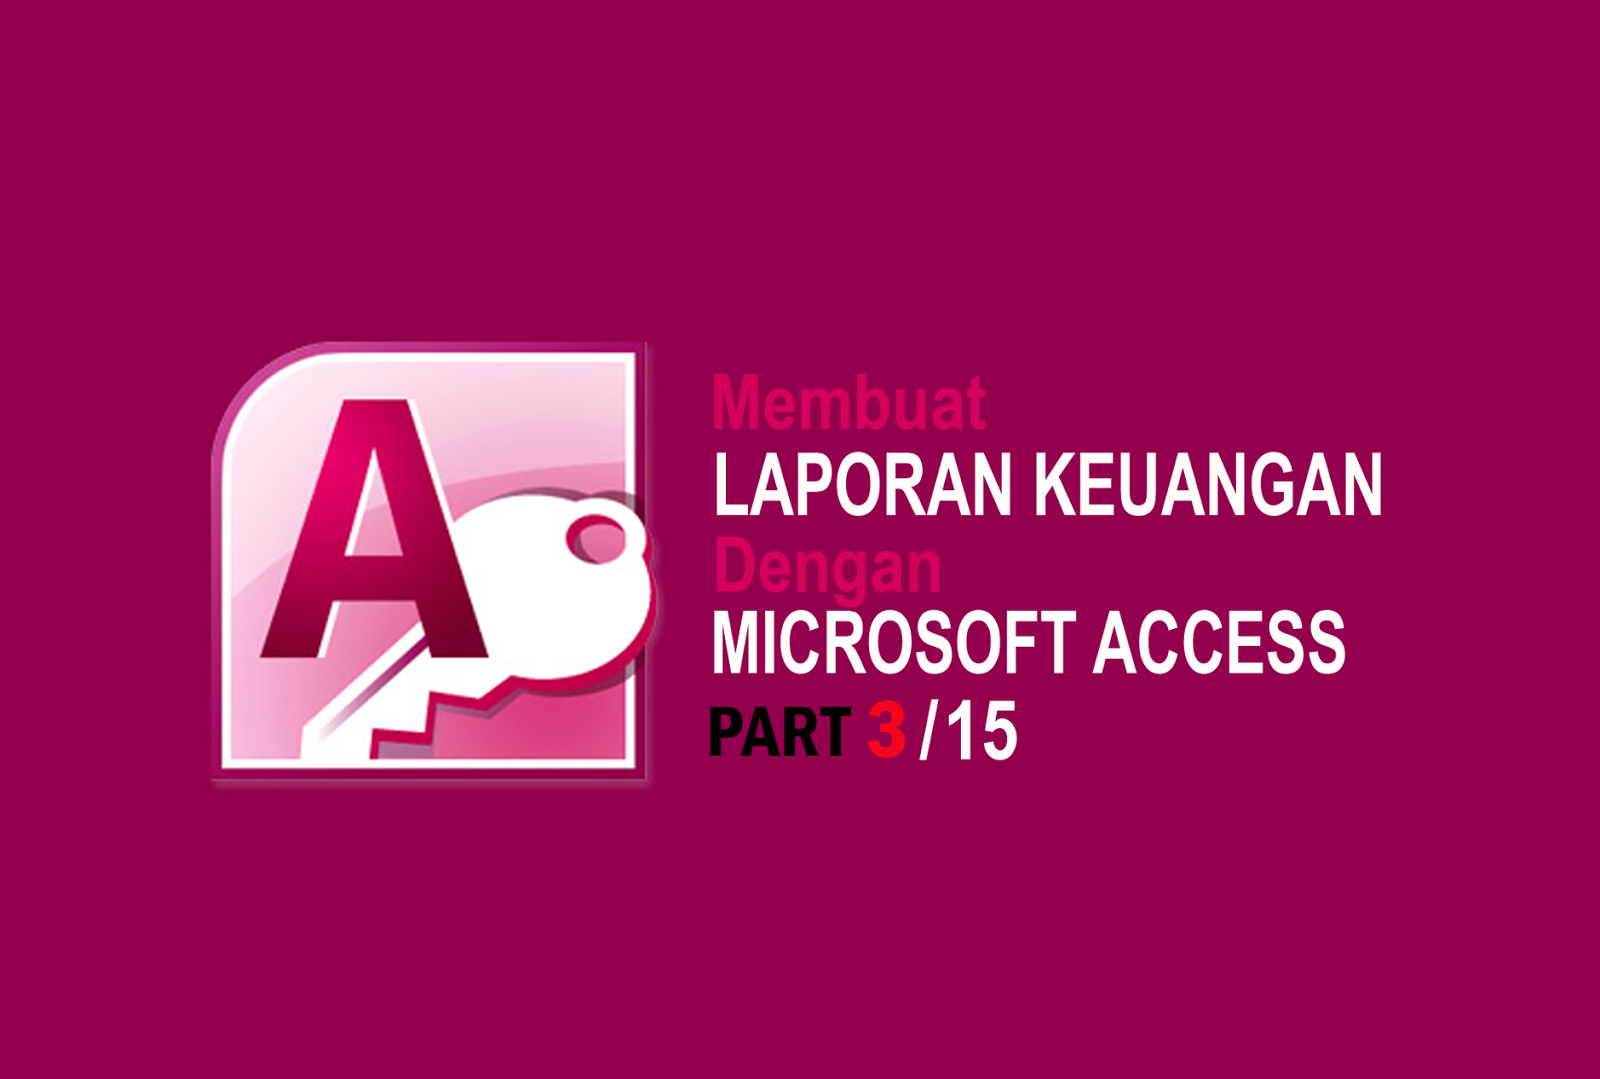 Access года лет. Microsoft access. Microsoft access 2010. СУБД access 2010. Значок аксесс.